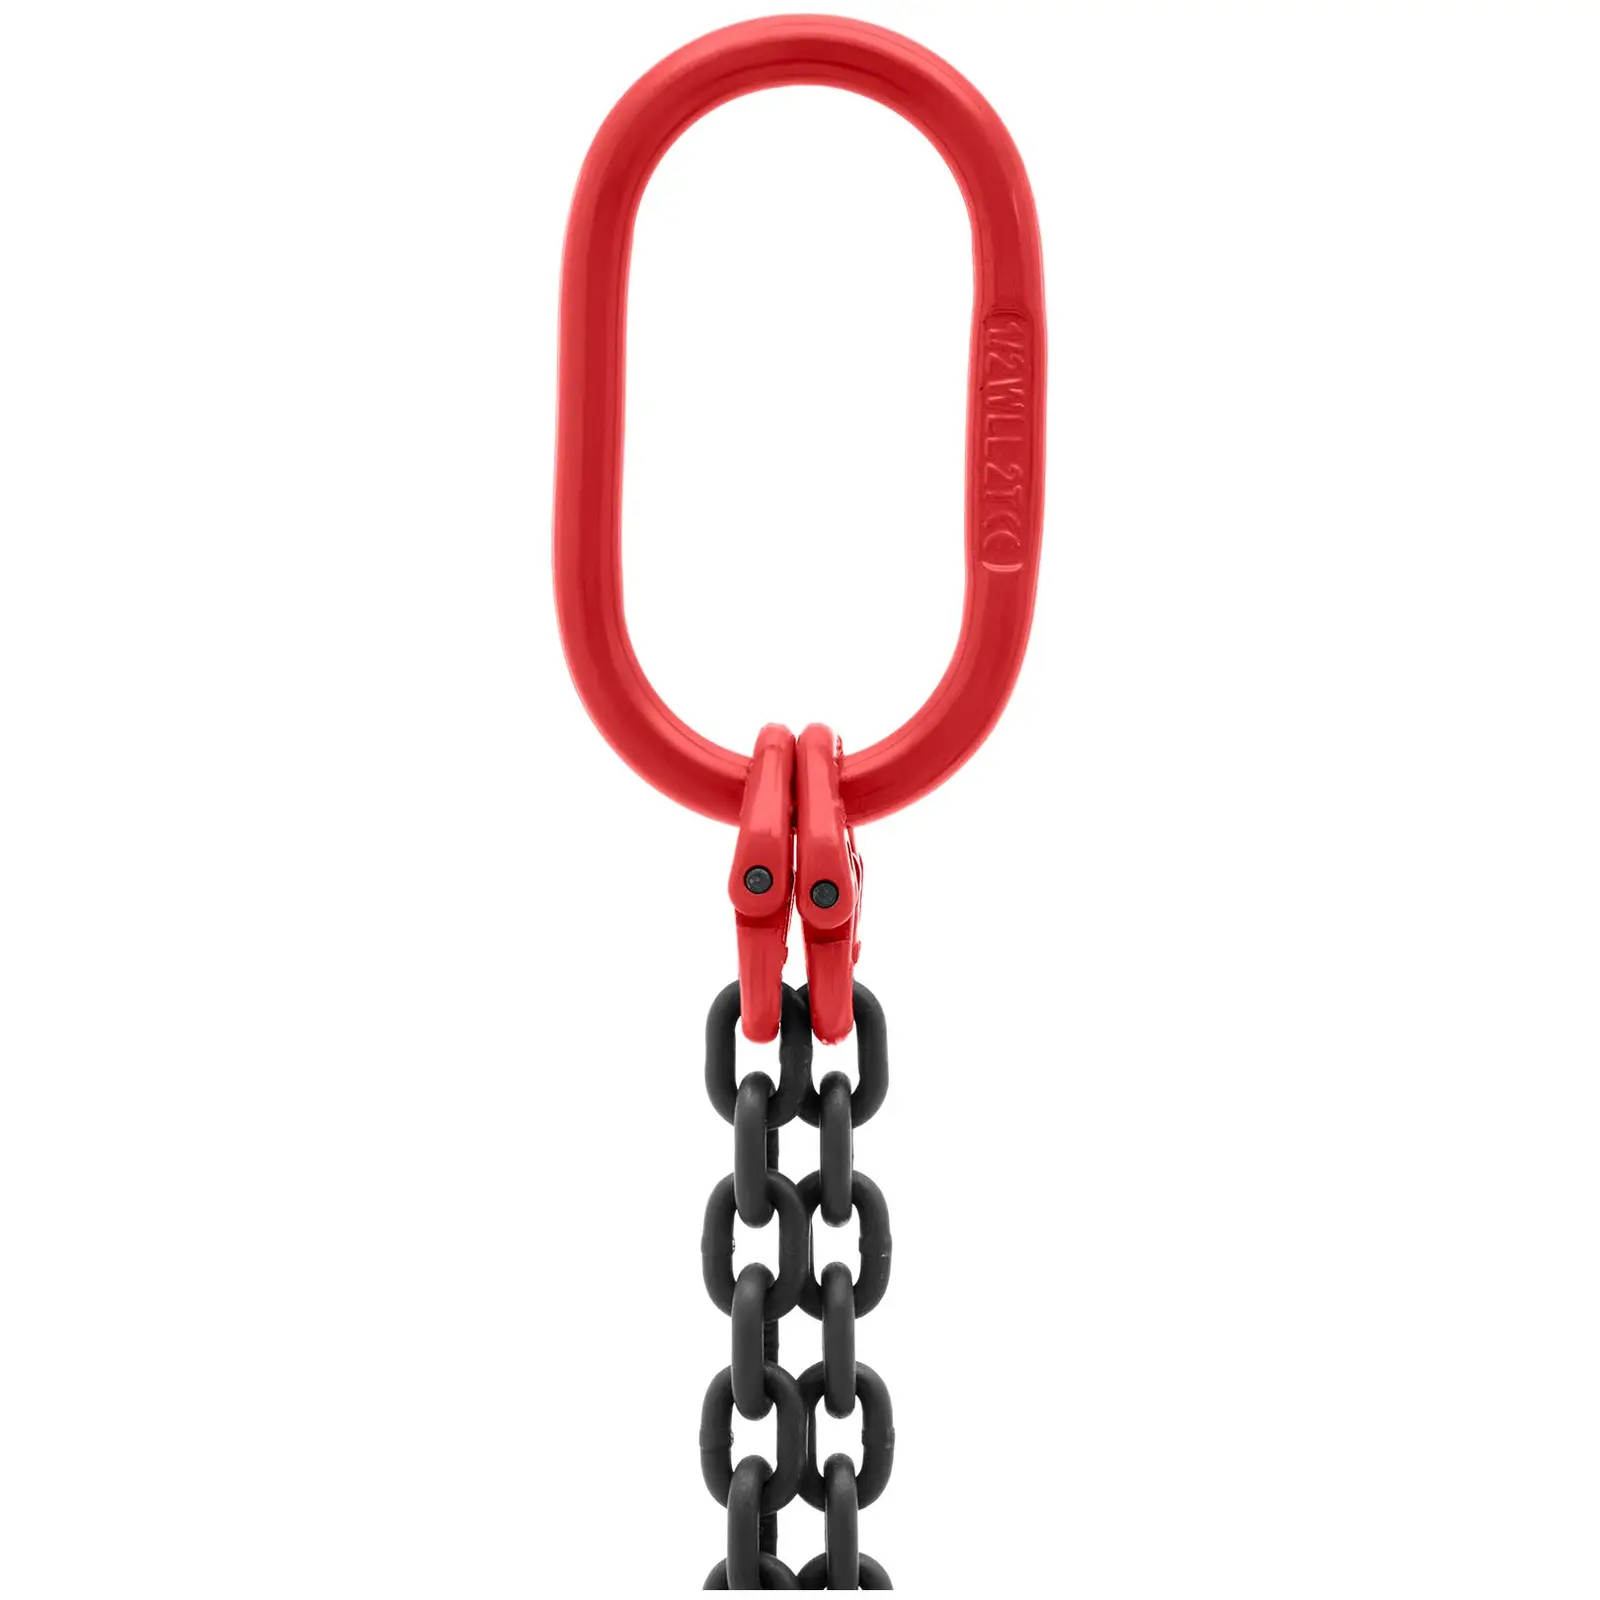 Imbracatura a catena -1.600 kg - 2 x 1 m - Nera, rossa